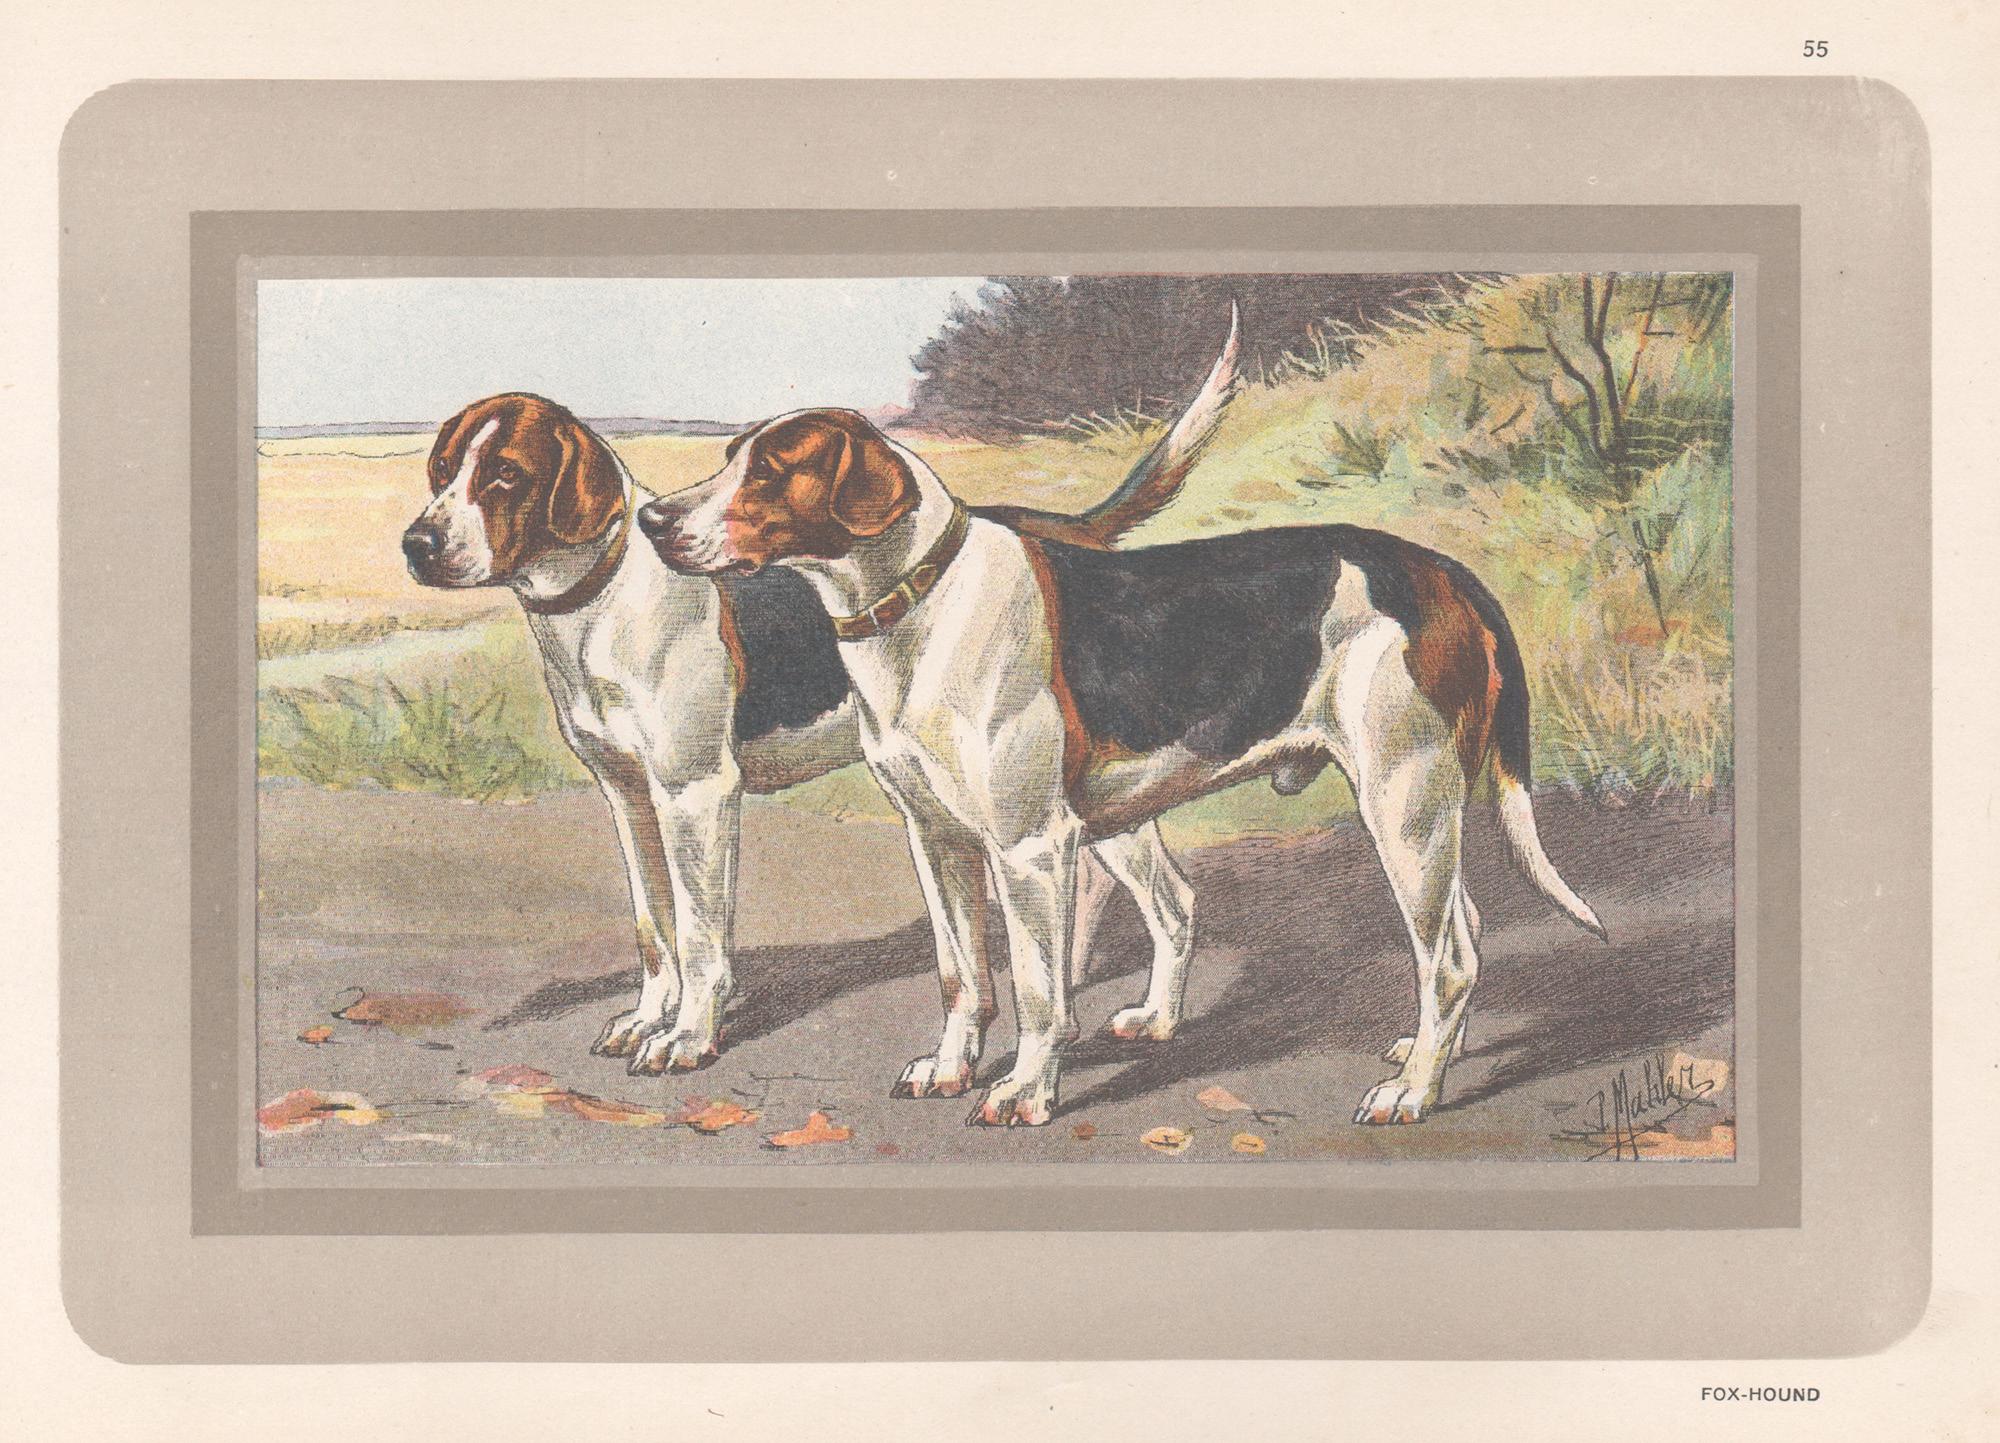 Fox Hound, Französischer Hundechromolithographie-Druck, 1931